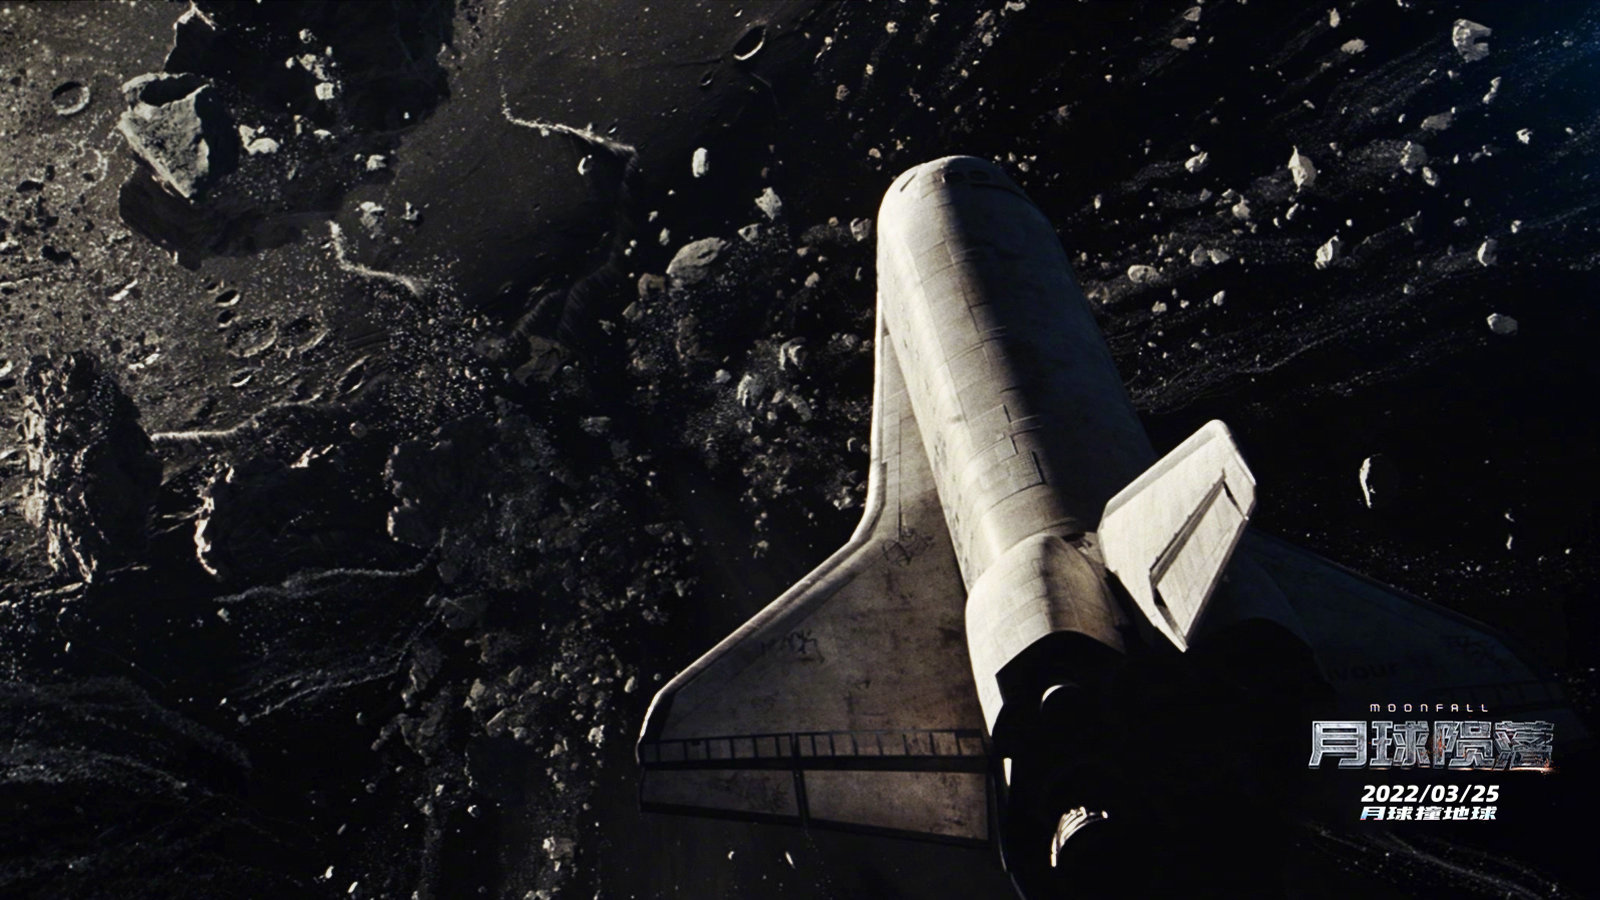 艾默里奇的新科幻、灾难动作冒险片《月球陨落》发布终极预告